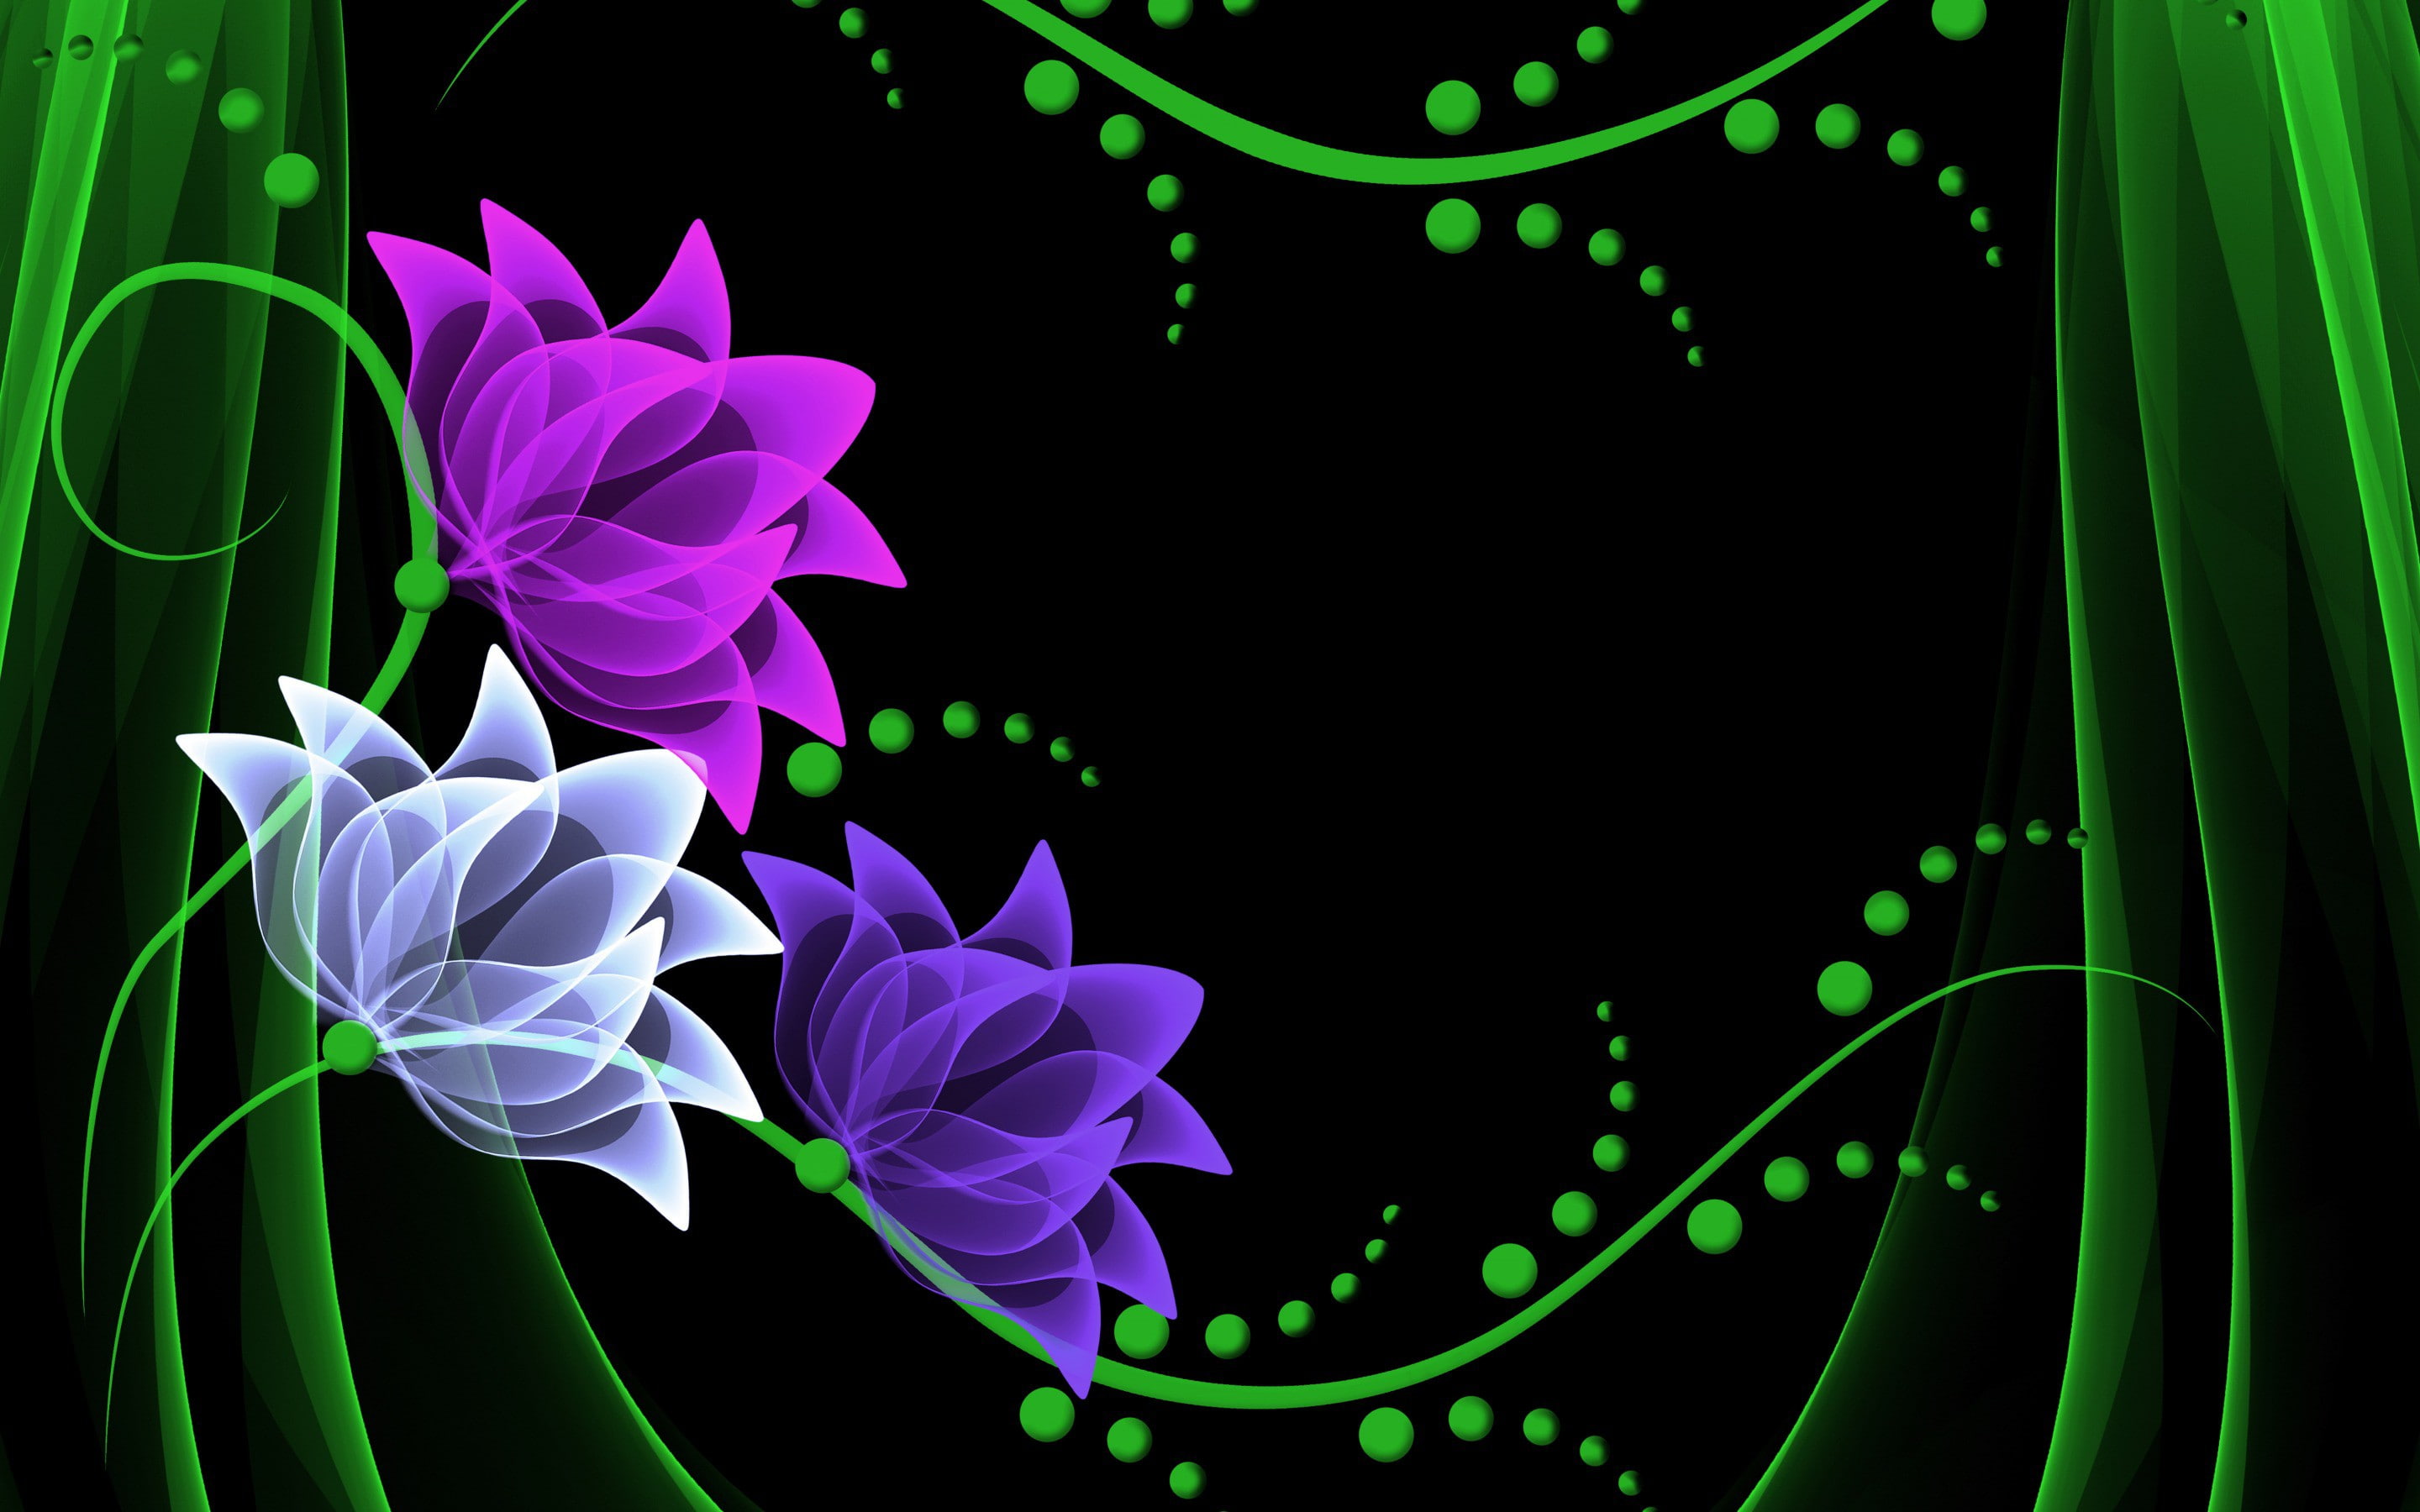 Neon Flowers Wallppaer, vector, background, Best s, download